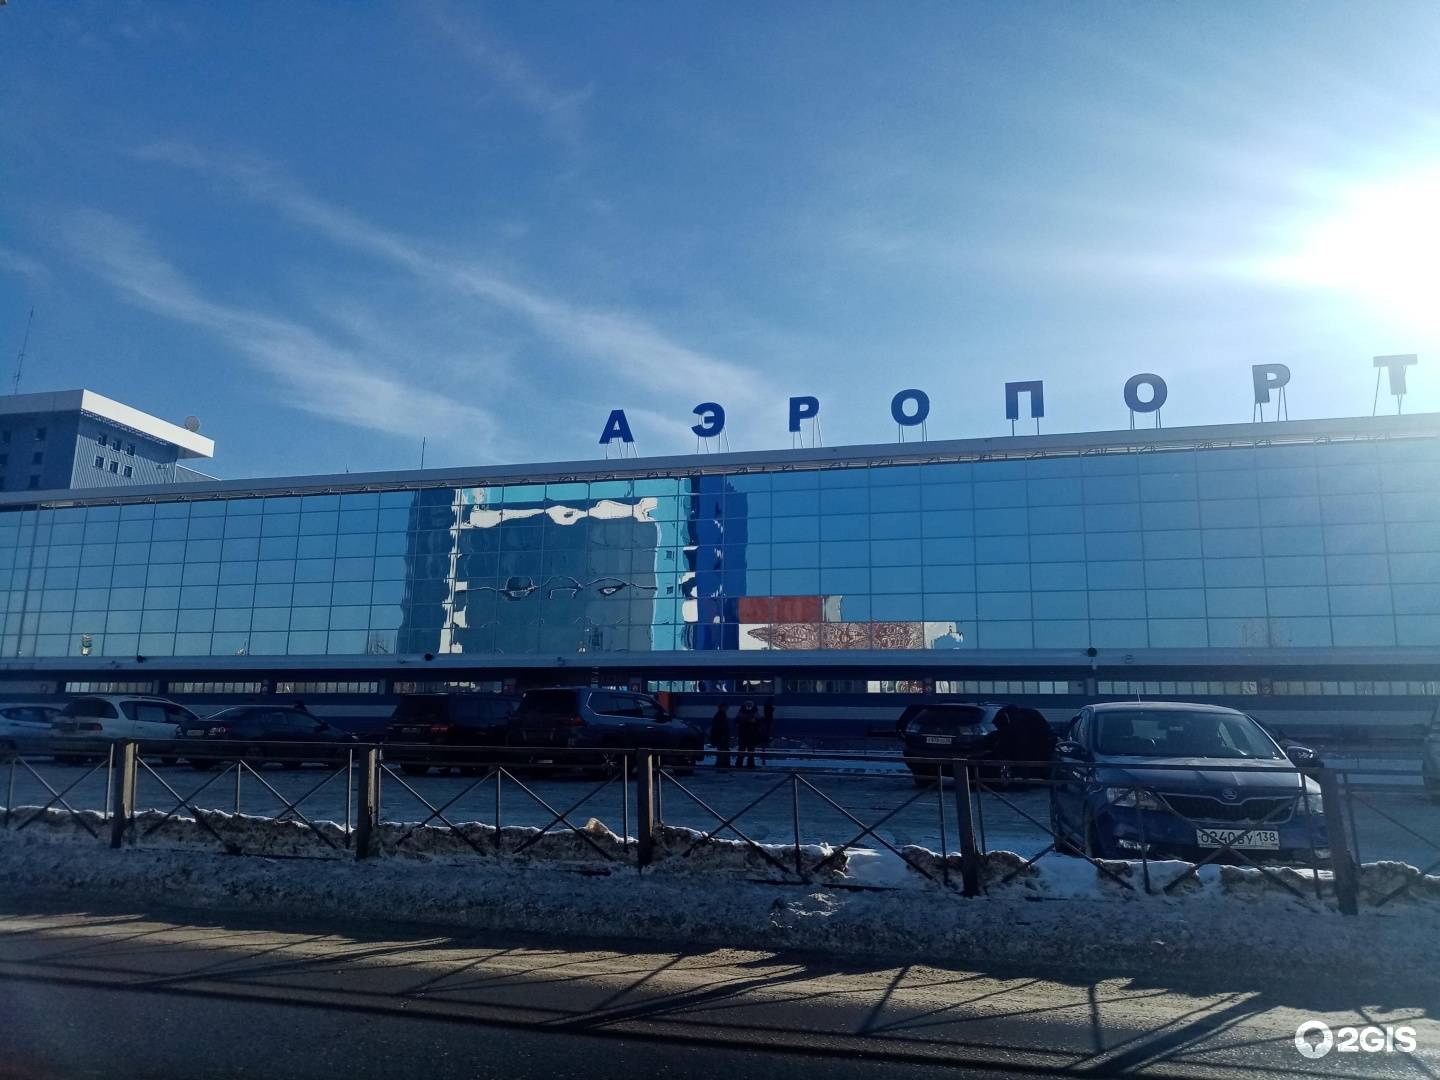 Аэропорт иркутск: справочная, онлайн табло, схемы терминалов, погода